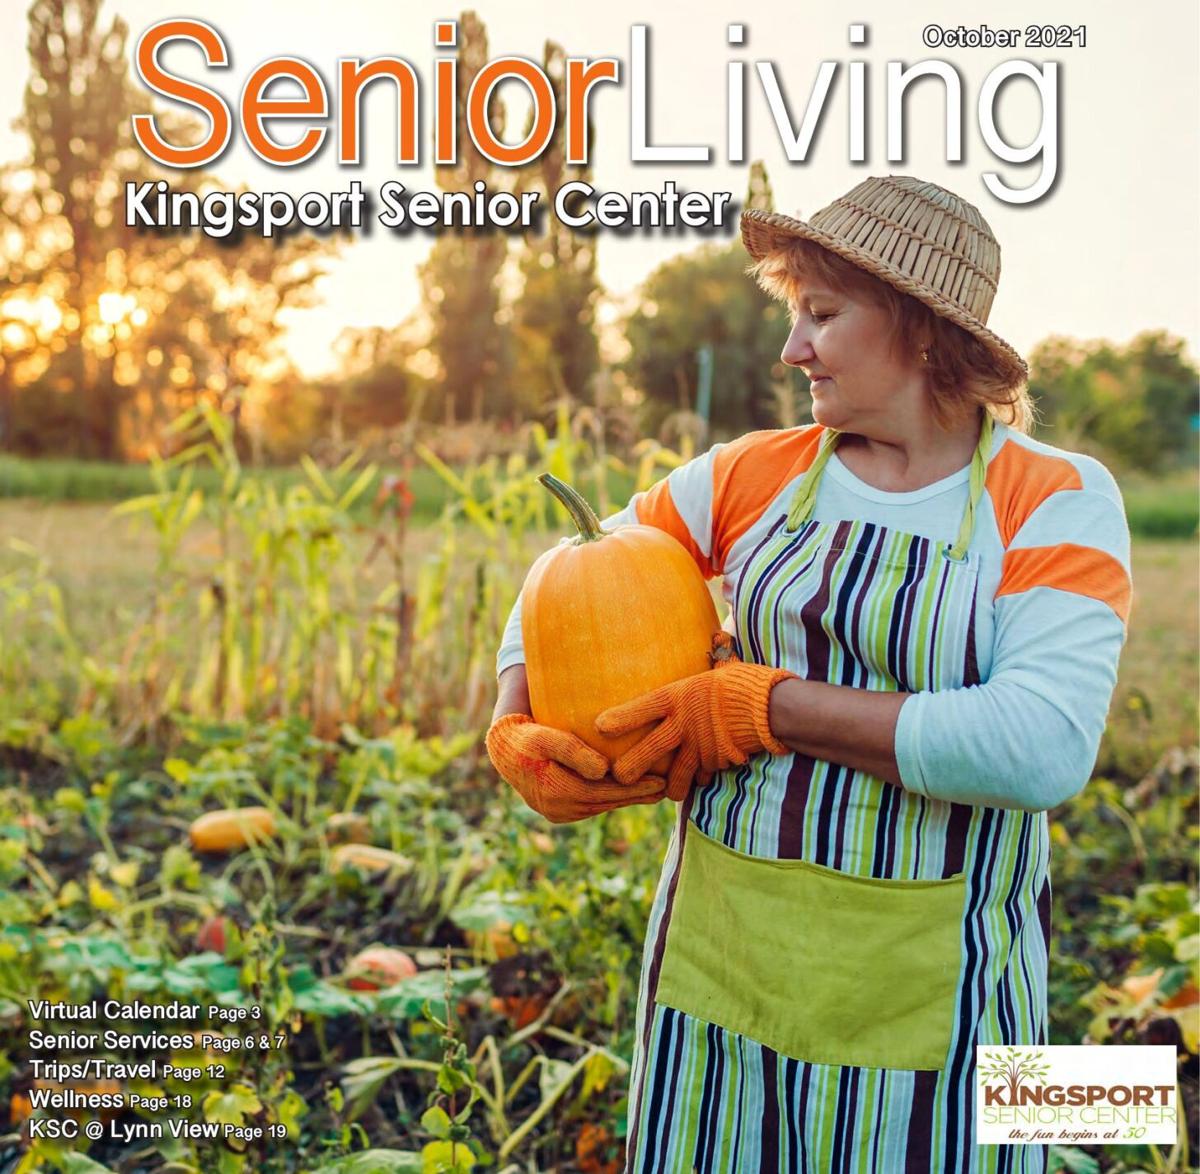 Senior Living October 2021